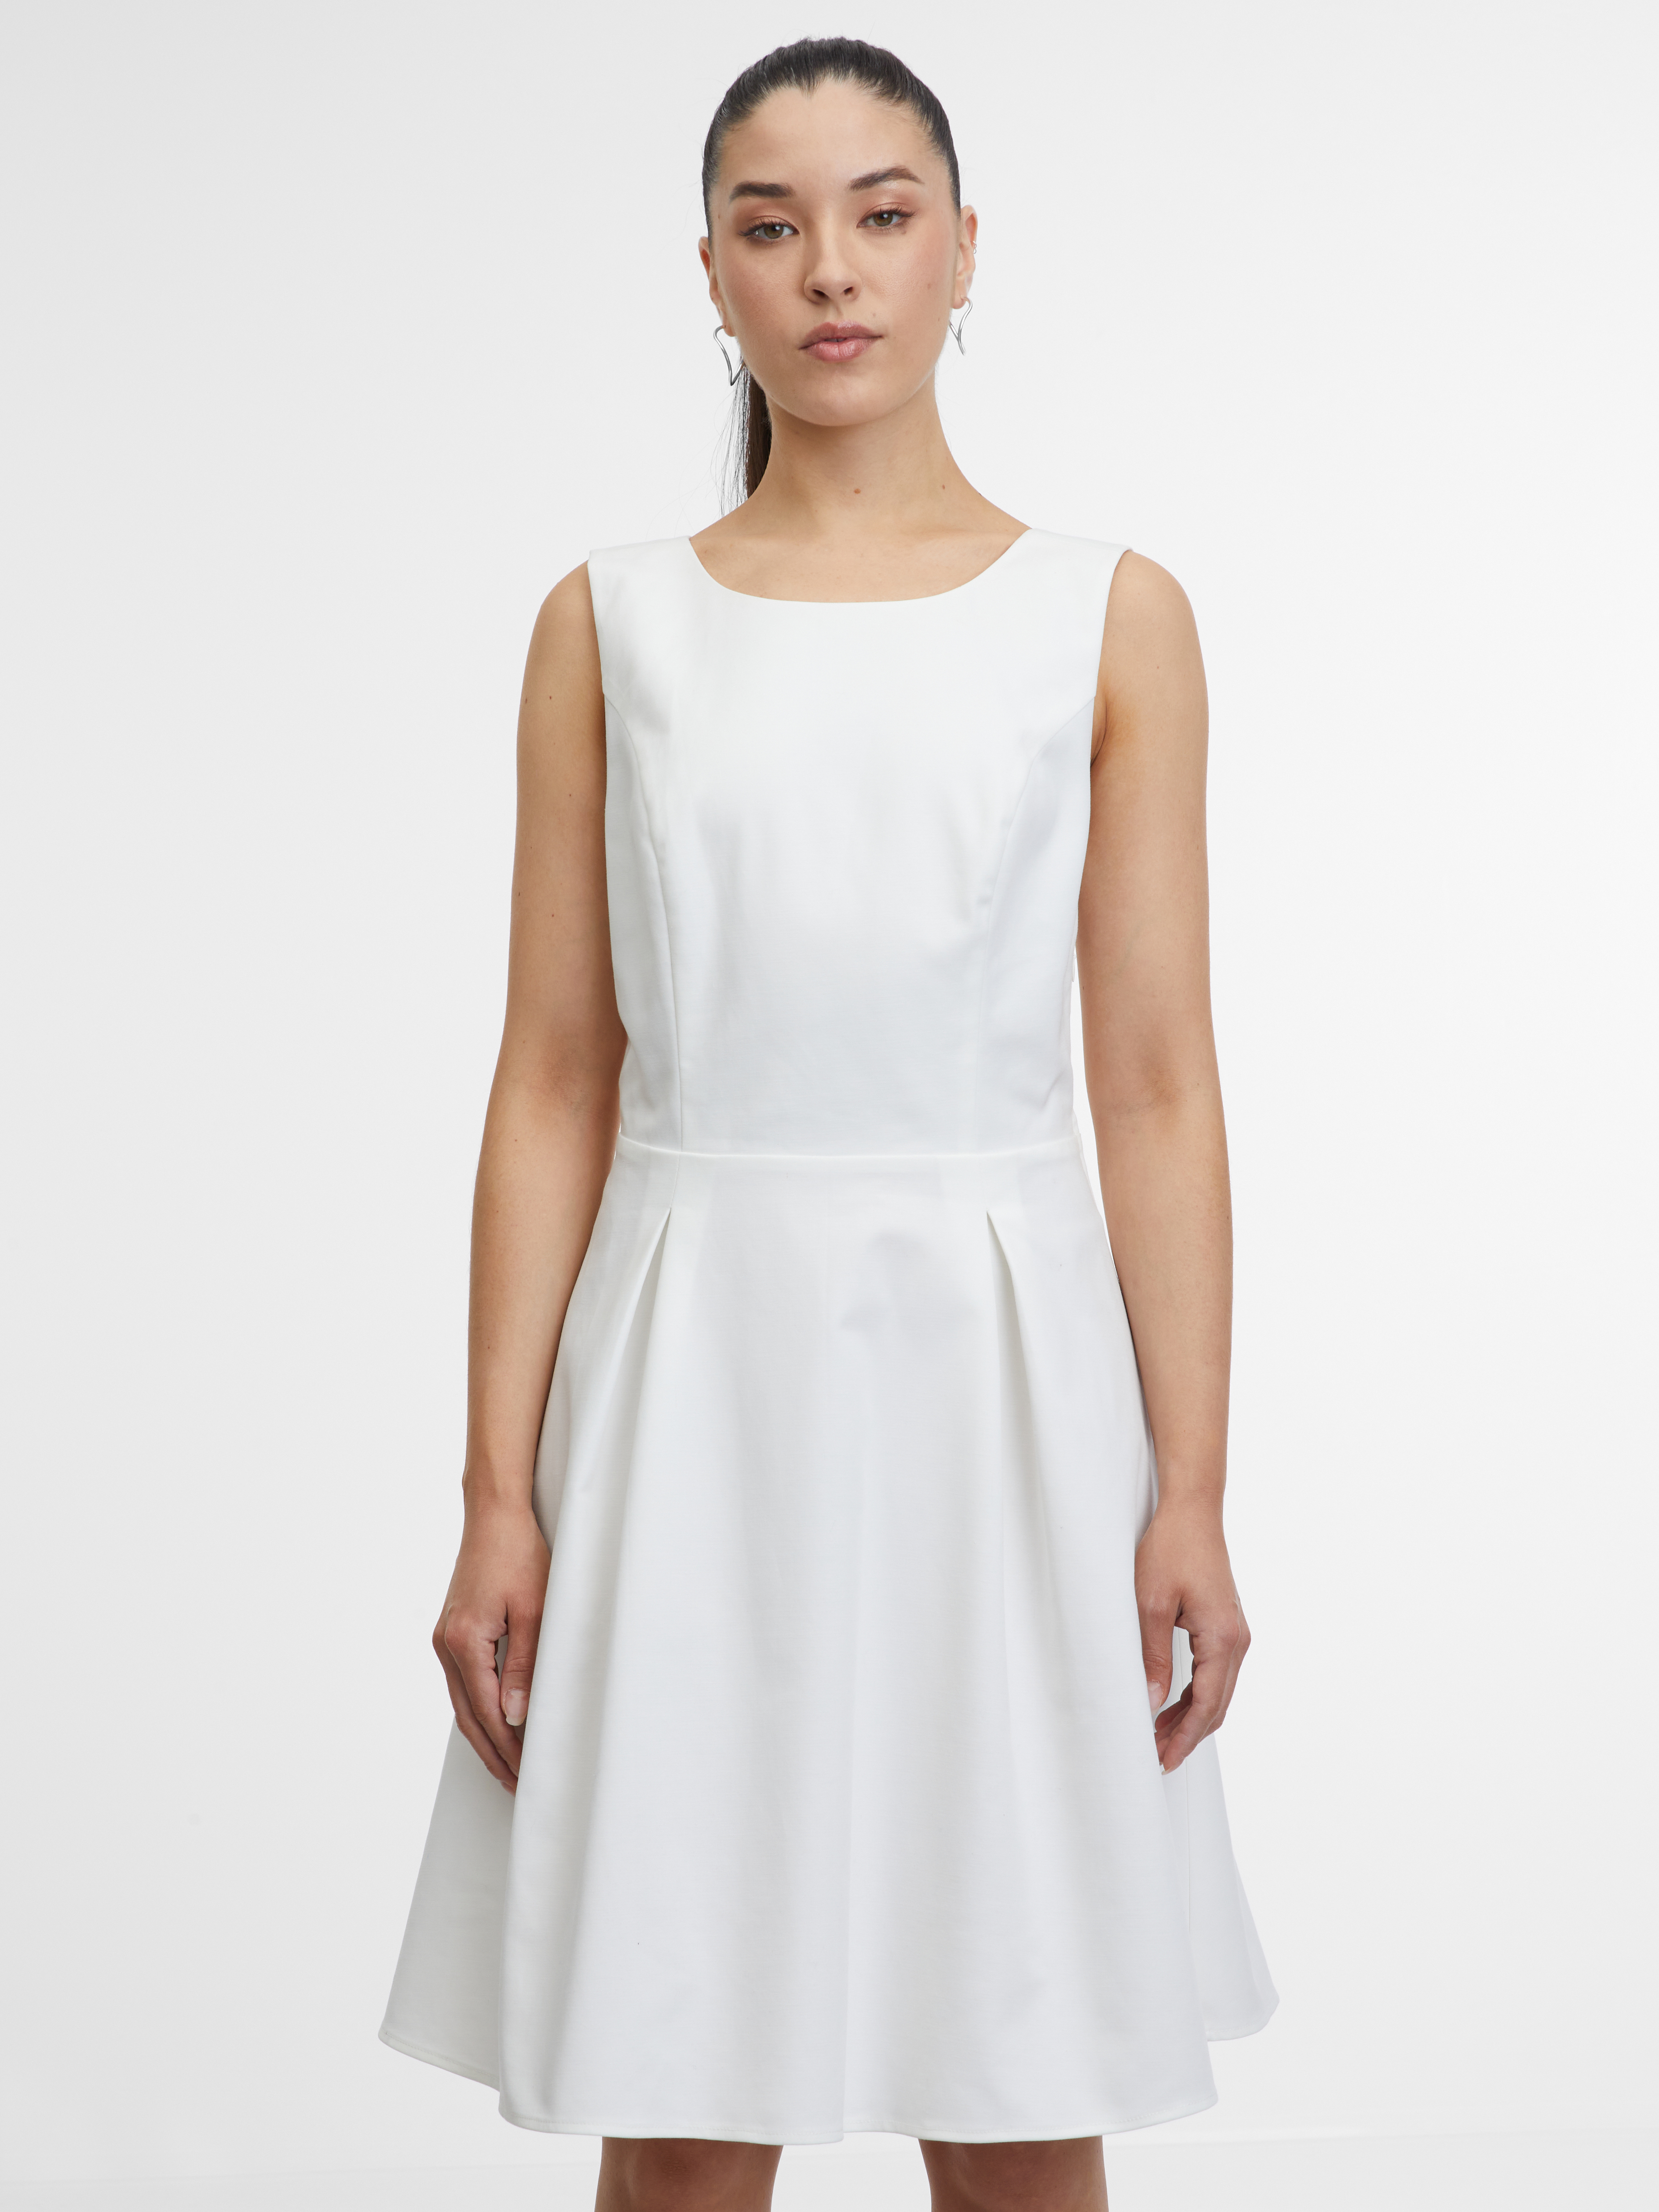 Orsay White Women's Dress - Women's